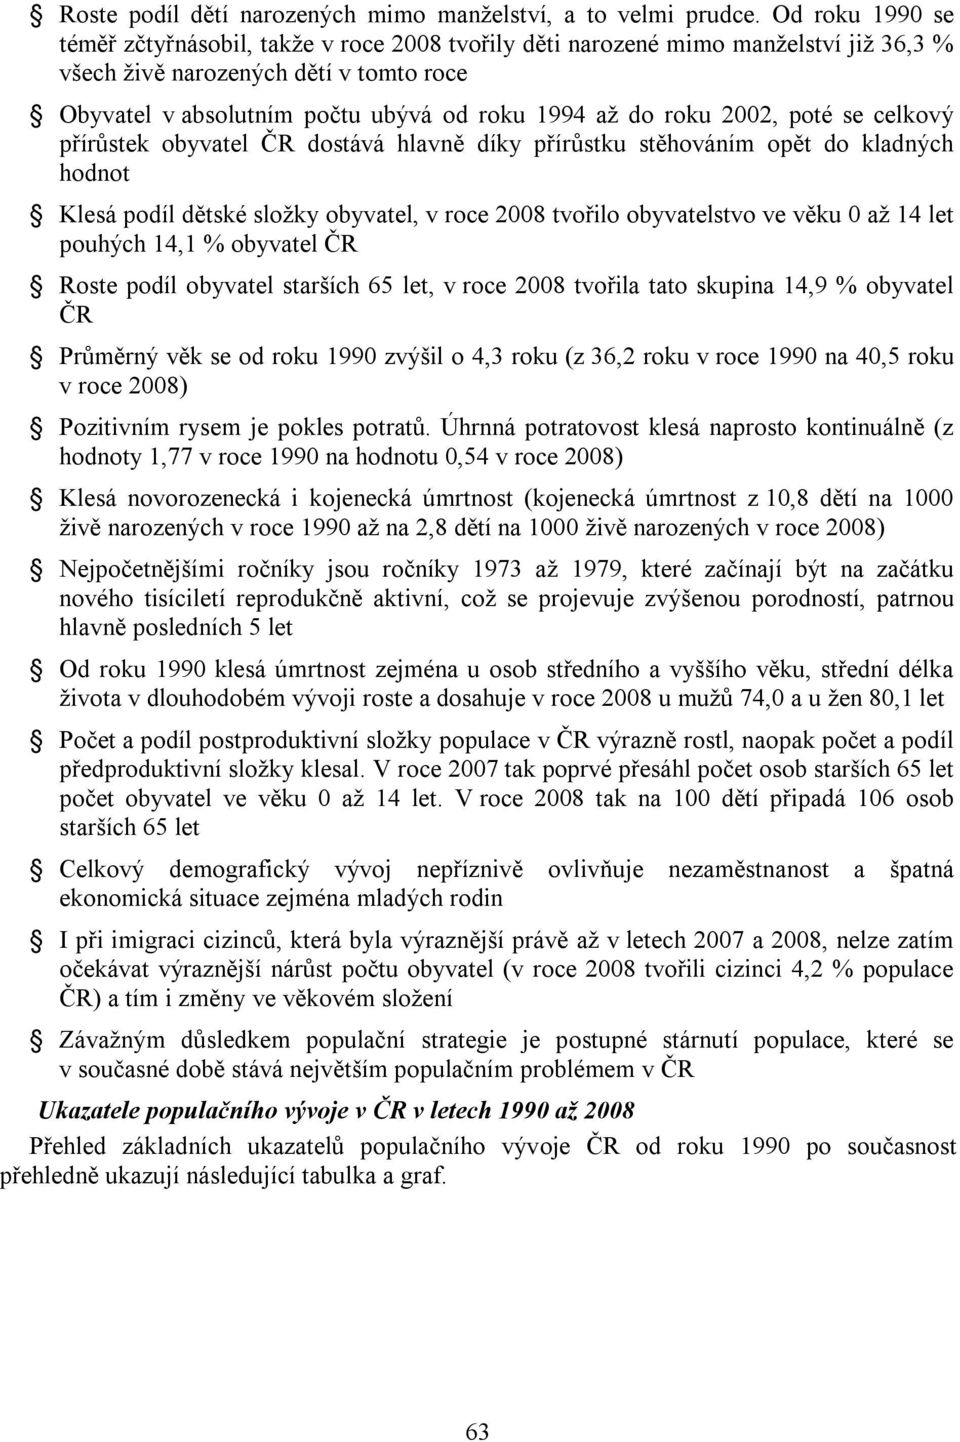 roku 2002, poté se celkový přírůstek obyvatel ČR dostává hlavně díky přírůstku stěhováním opět do kladných hodnot Klesá podíl dětské složky obyvatel, v roce 2008 tvořilo obyvatelstvo ve věku 0 až 14